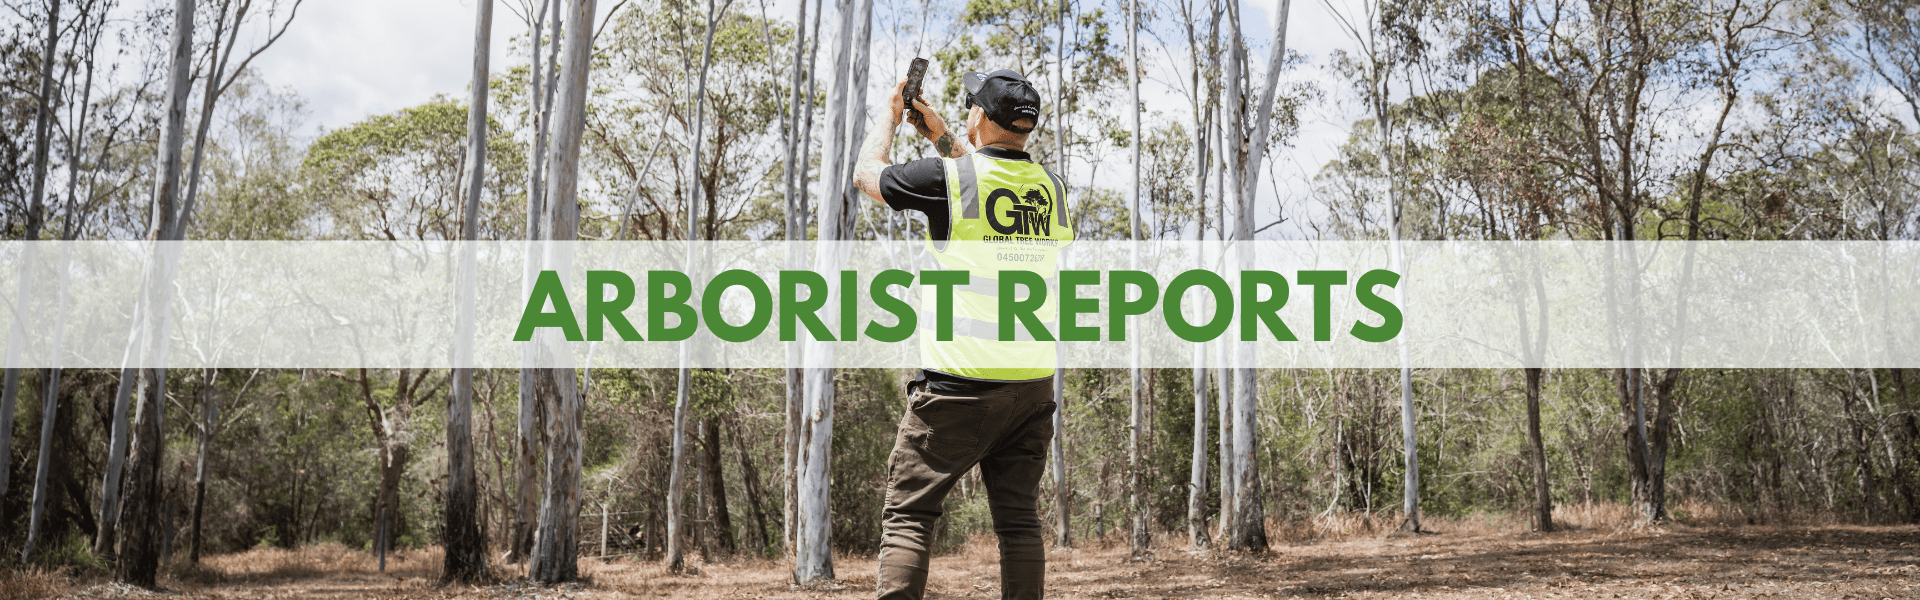 Arborist Reports